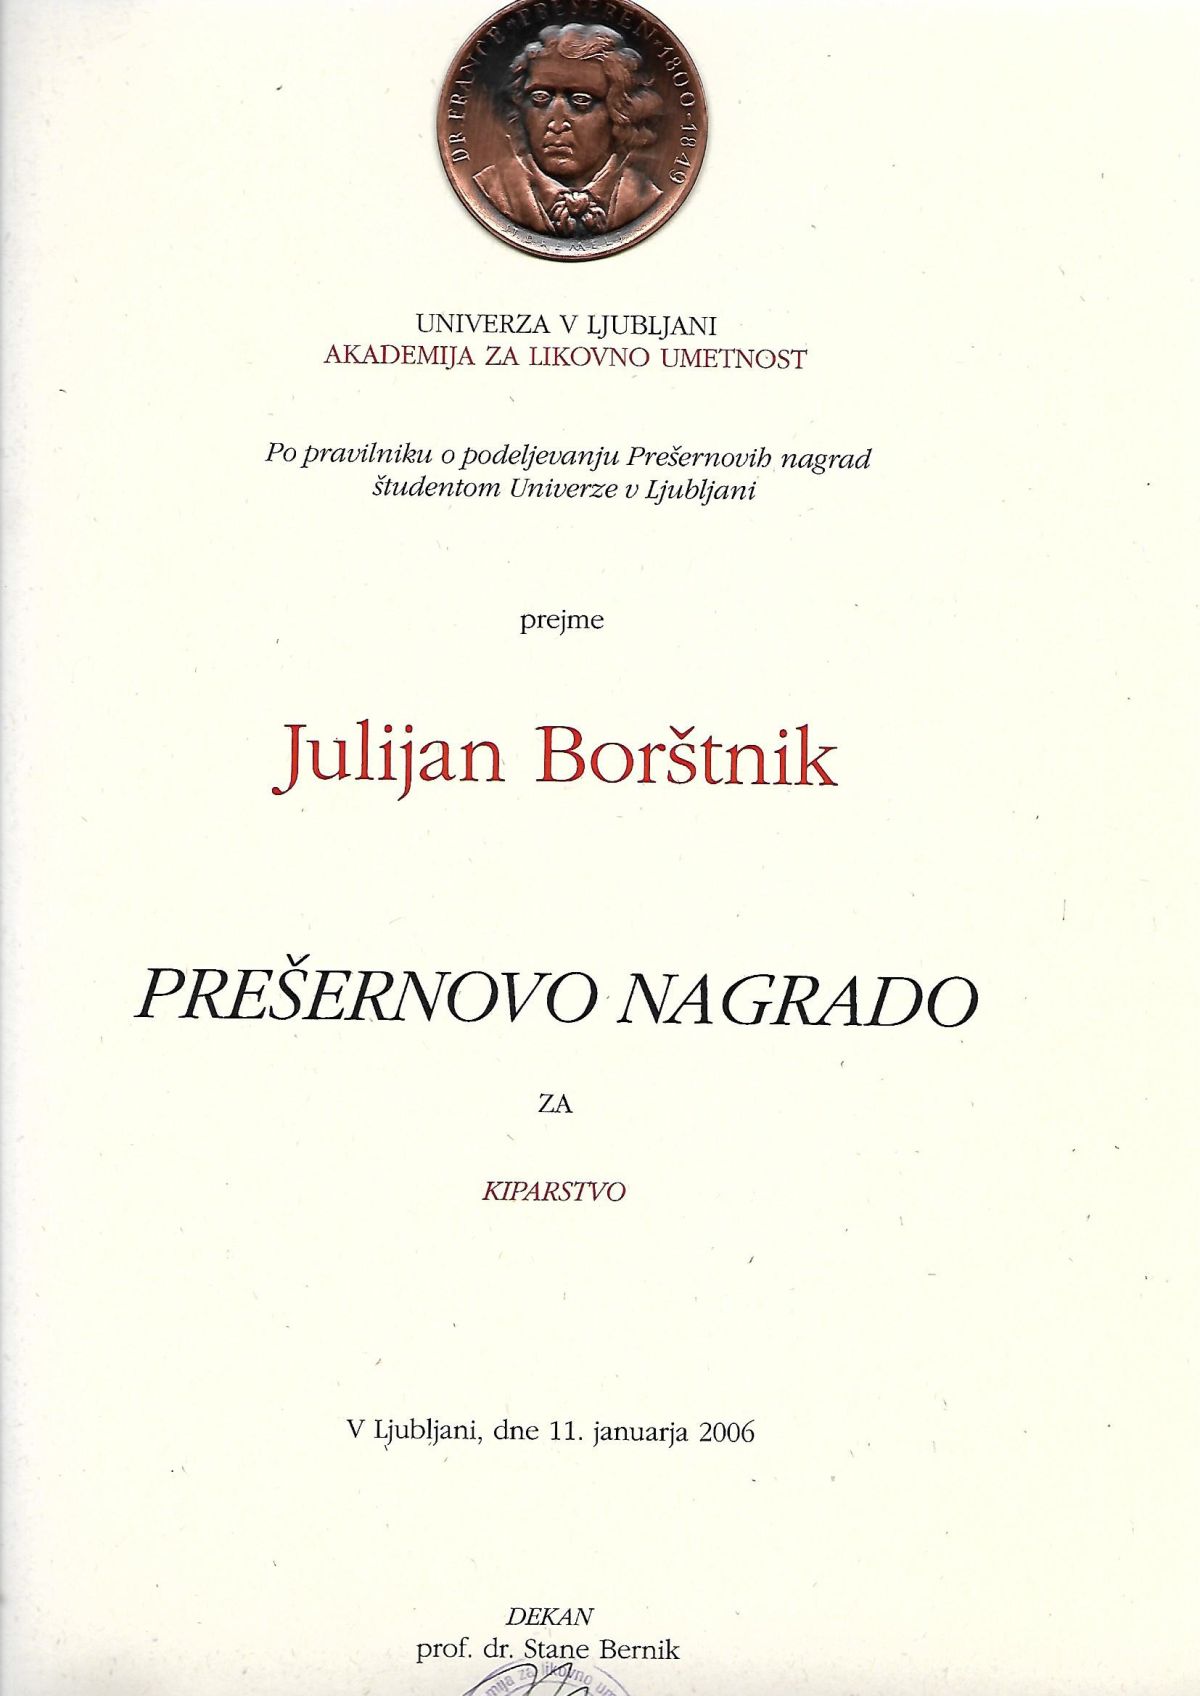 Prešeren Award for Students 2006